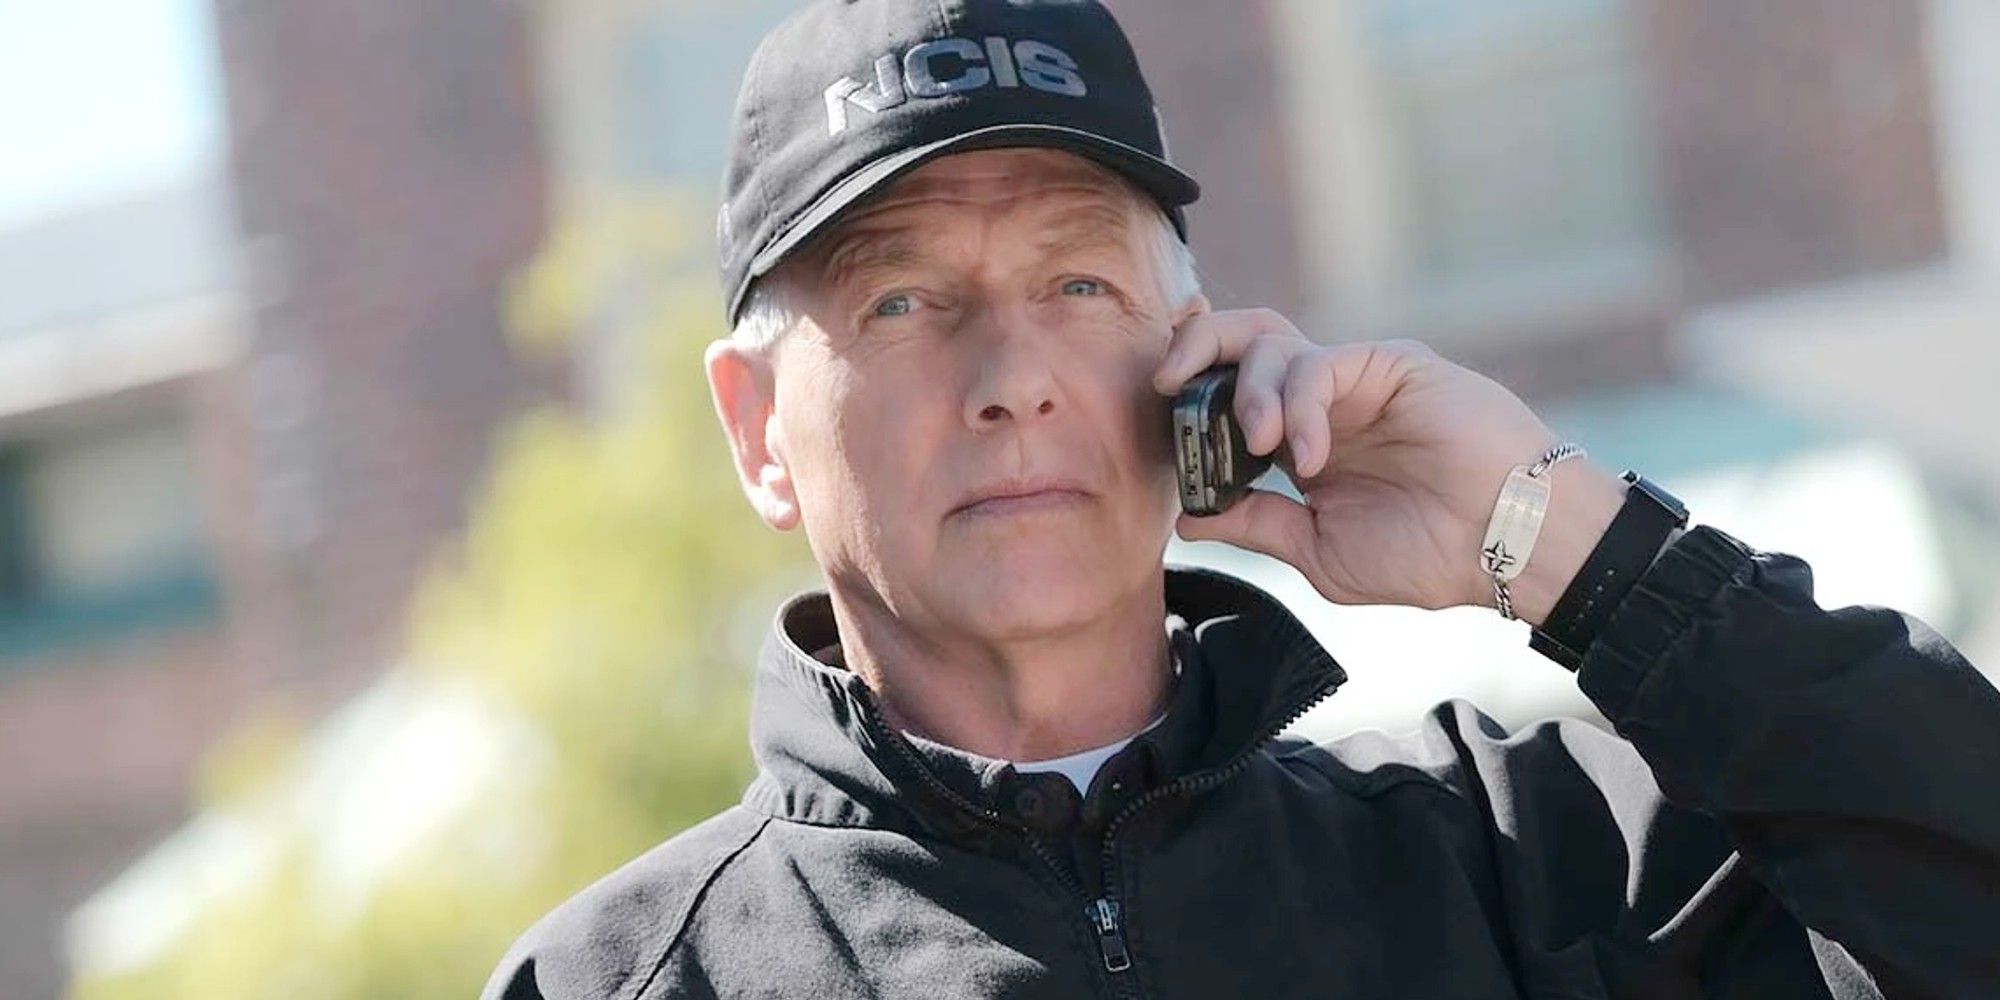 NCIS Mark Harmon as Leroy Jethro Gibbs talking to someone on his phone